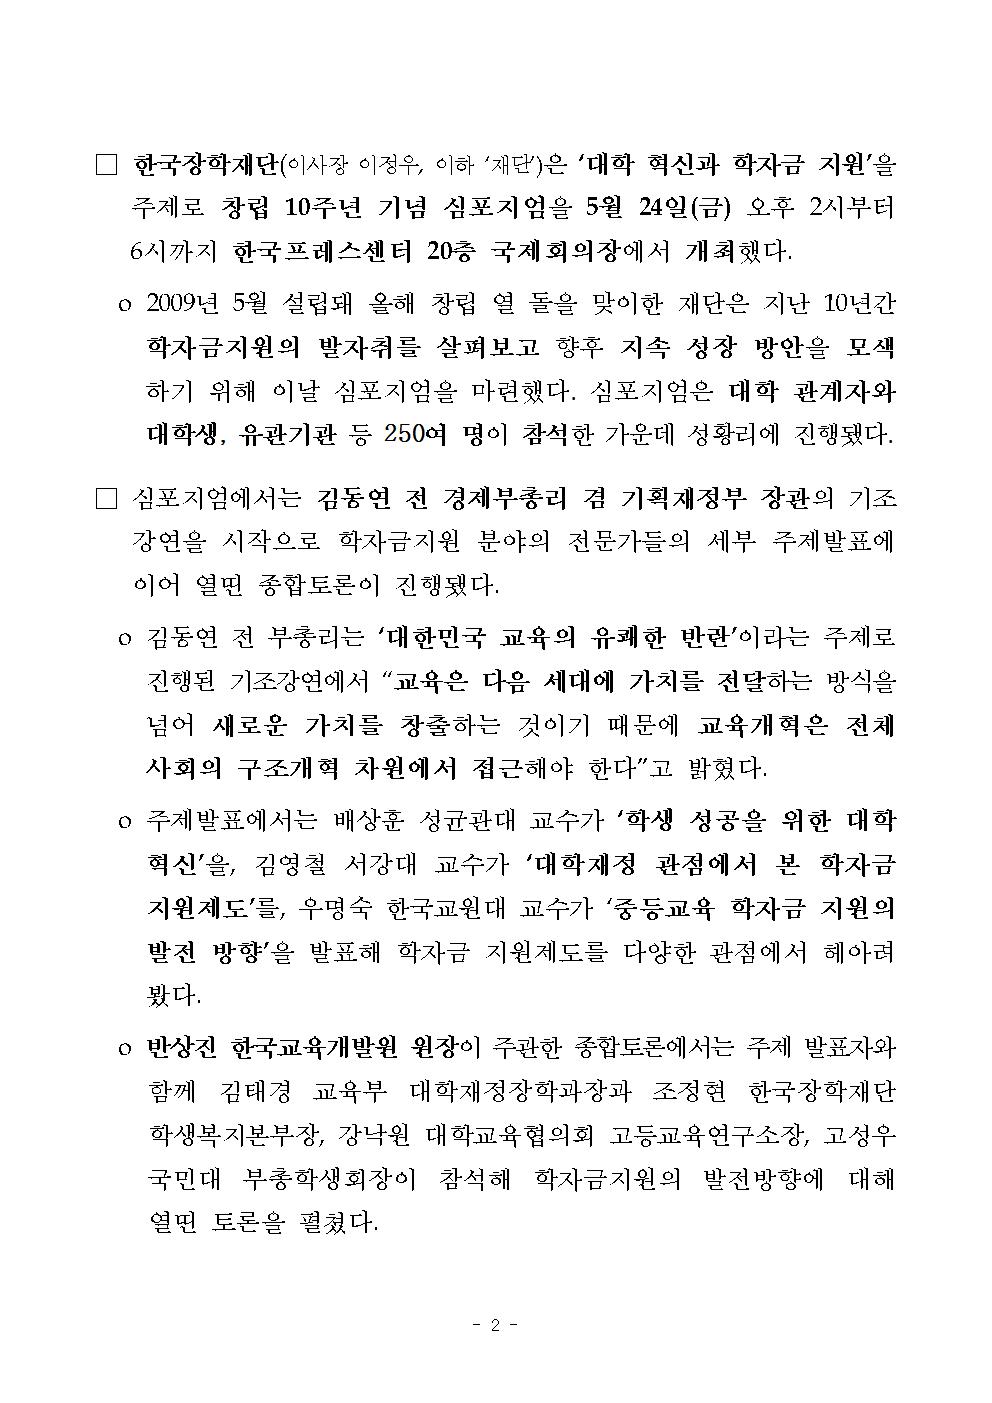 05-27(월)[보도자료] 한국장학재단 창립 10주년 심포지엄 보도자료002.jpg